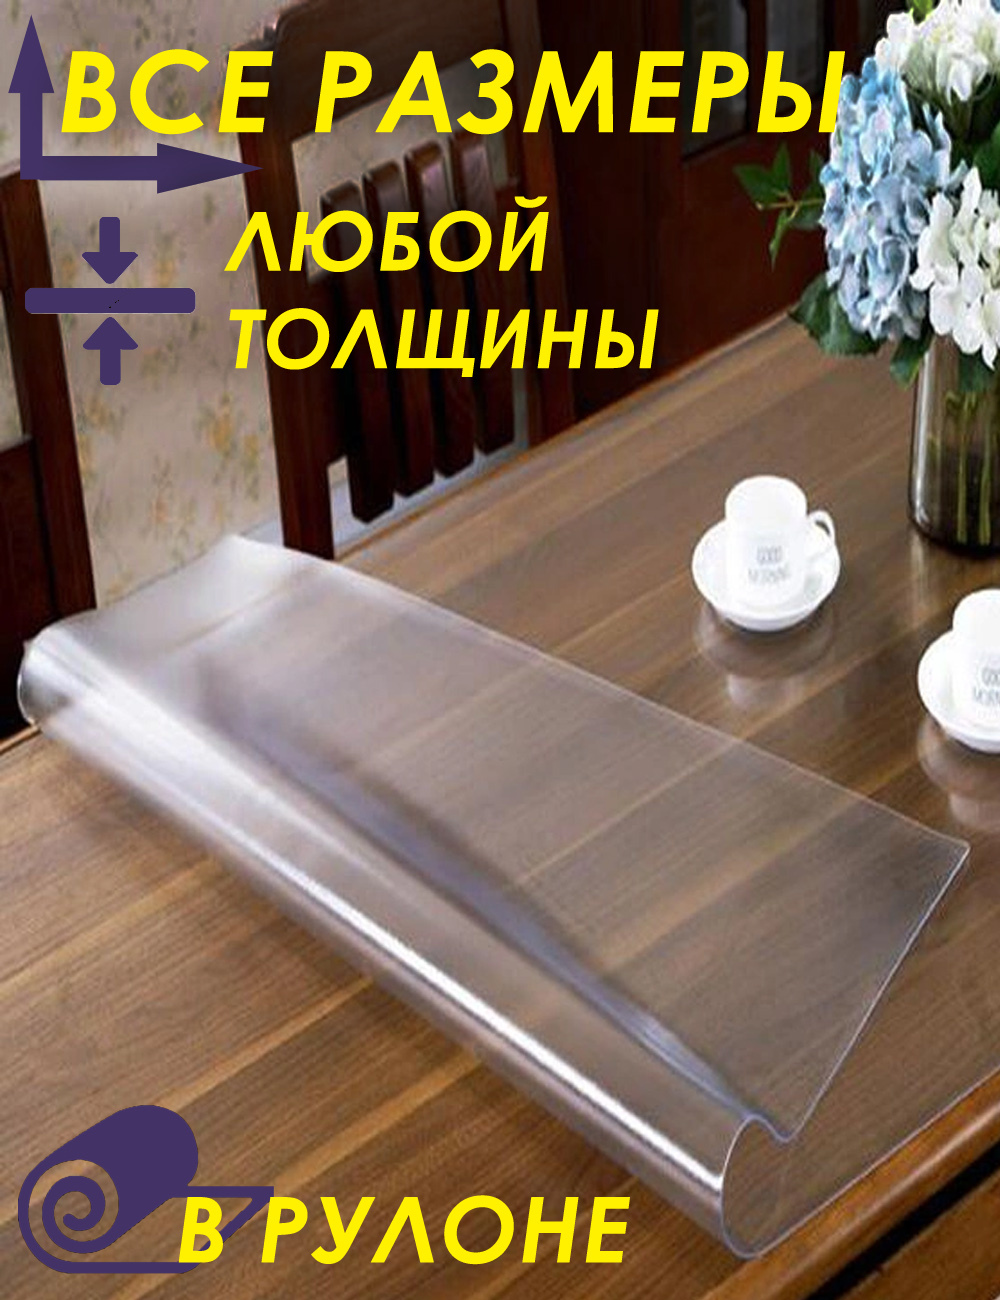 прозрачное покрытие для стола из пвх